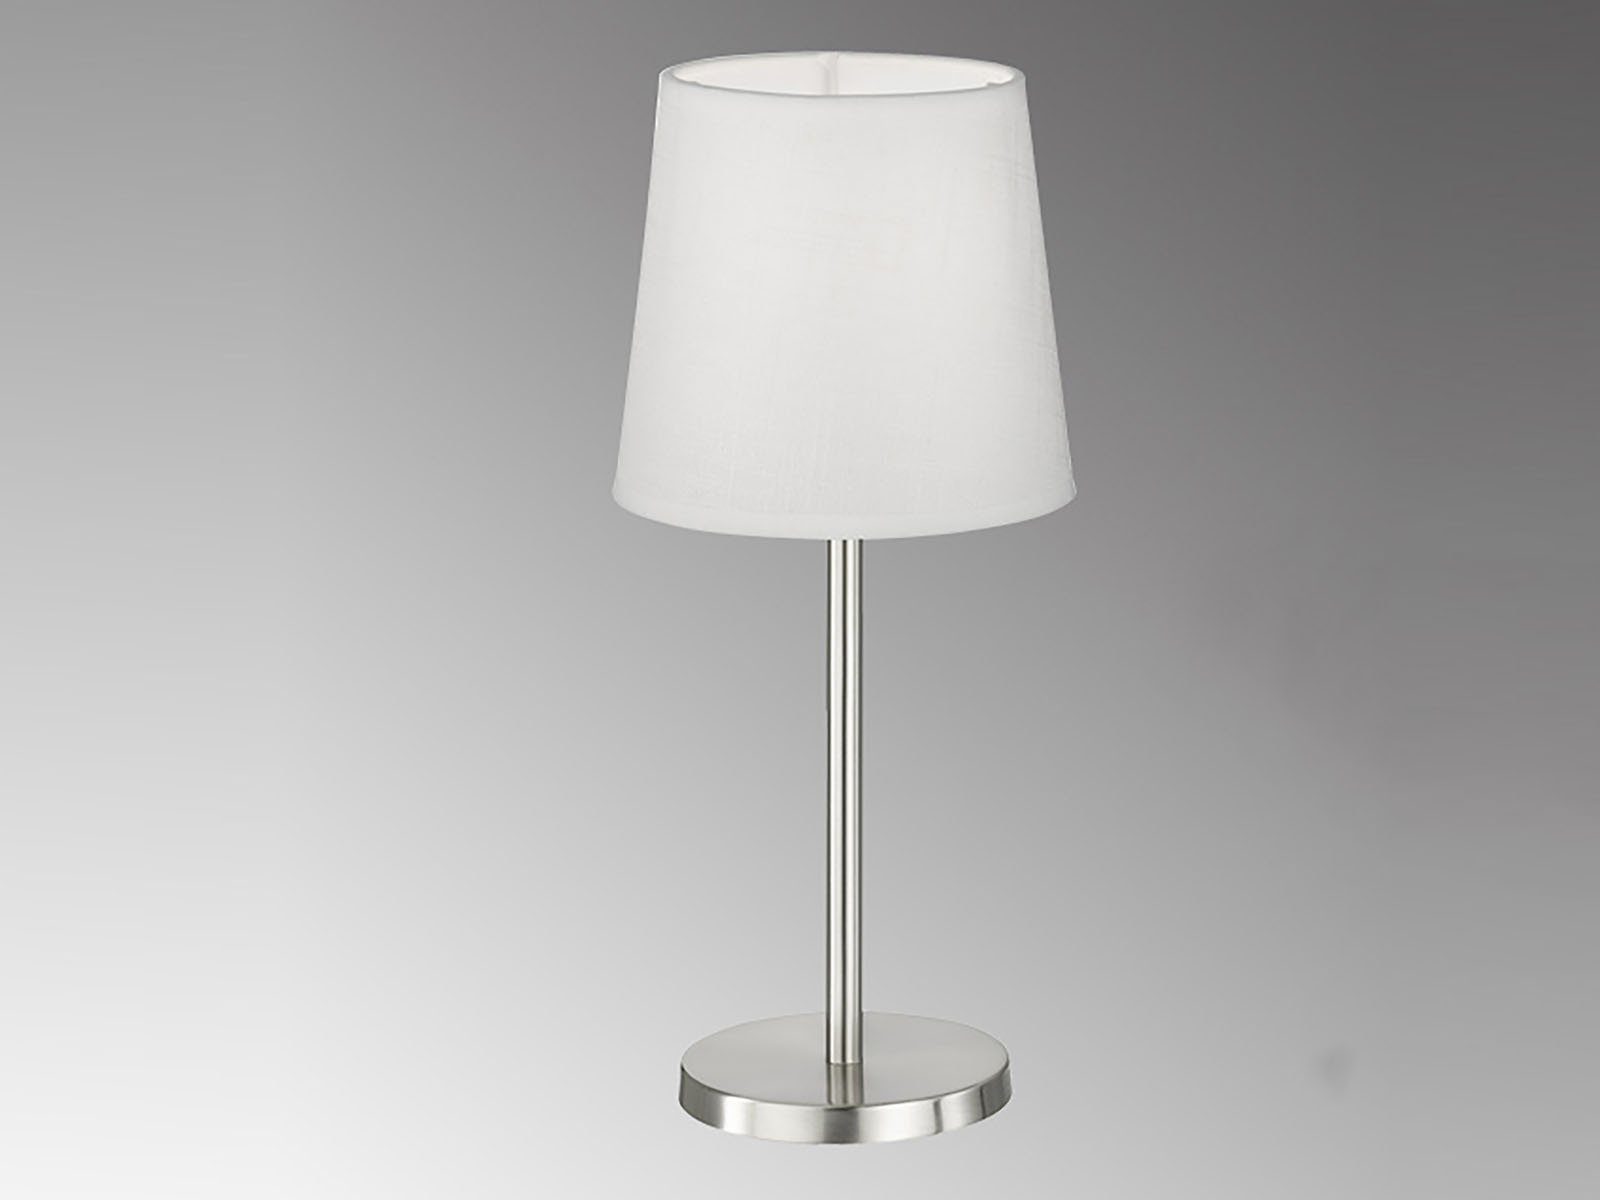 wechselbar, Warmweiß, mit 30cm kleine Höhe Stoff Weiß, Lampenschirm Design-klassiker Nachttischlampe, easy! LED LED FHL